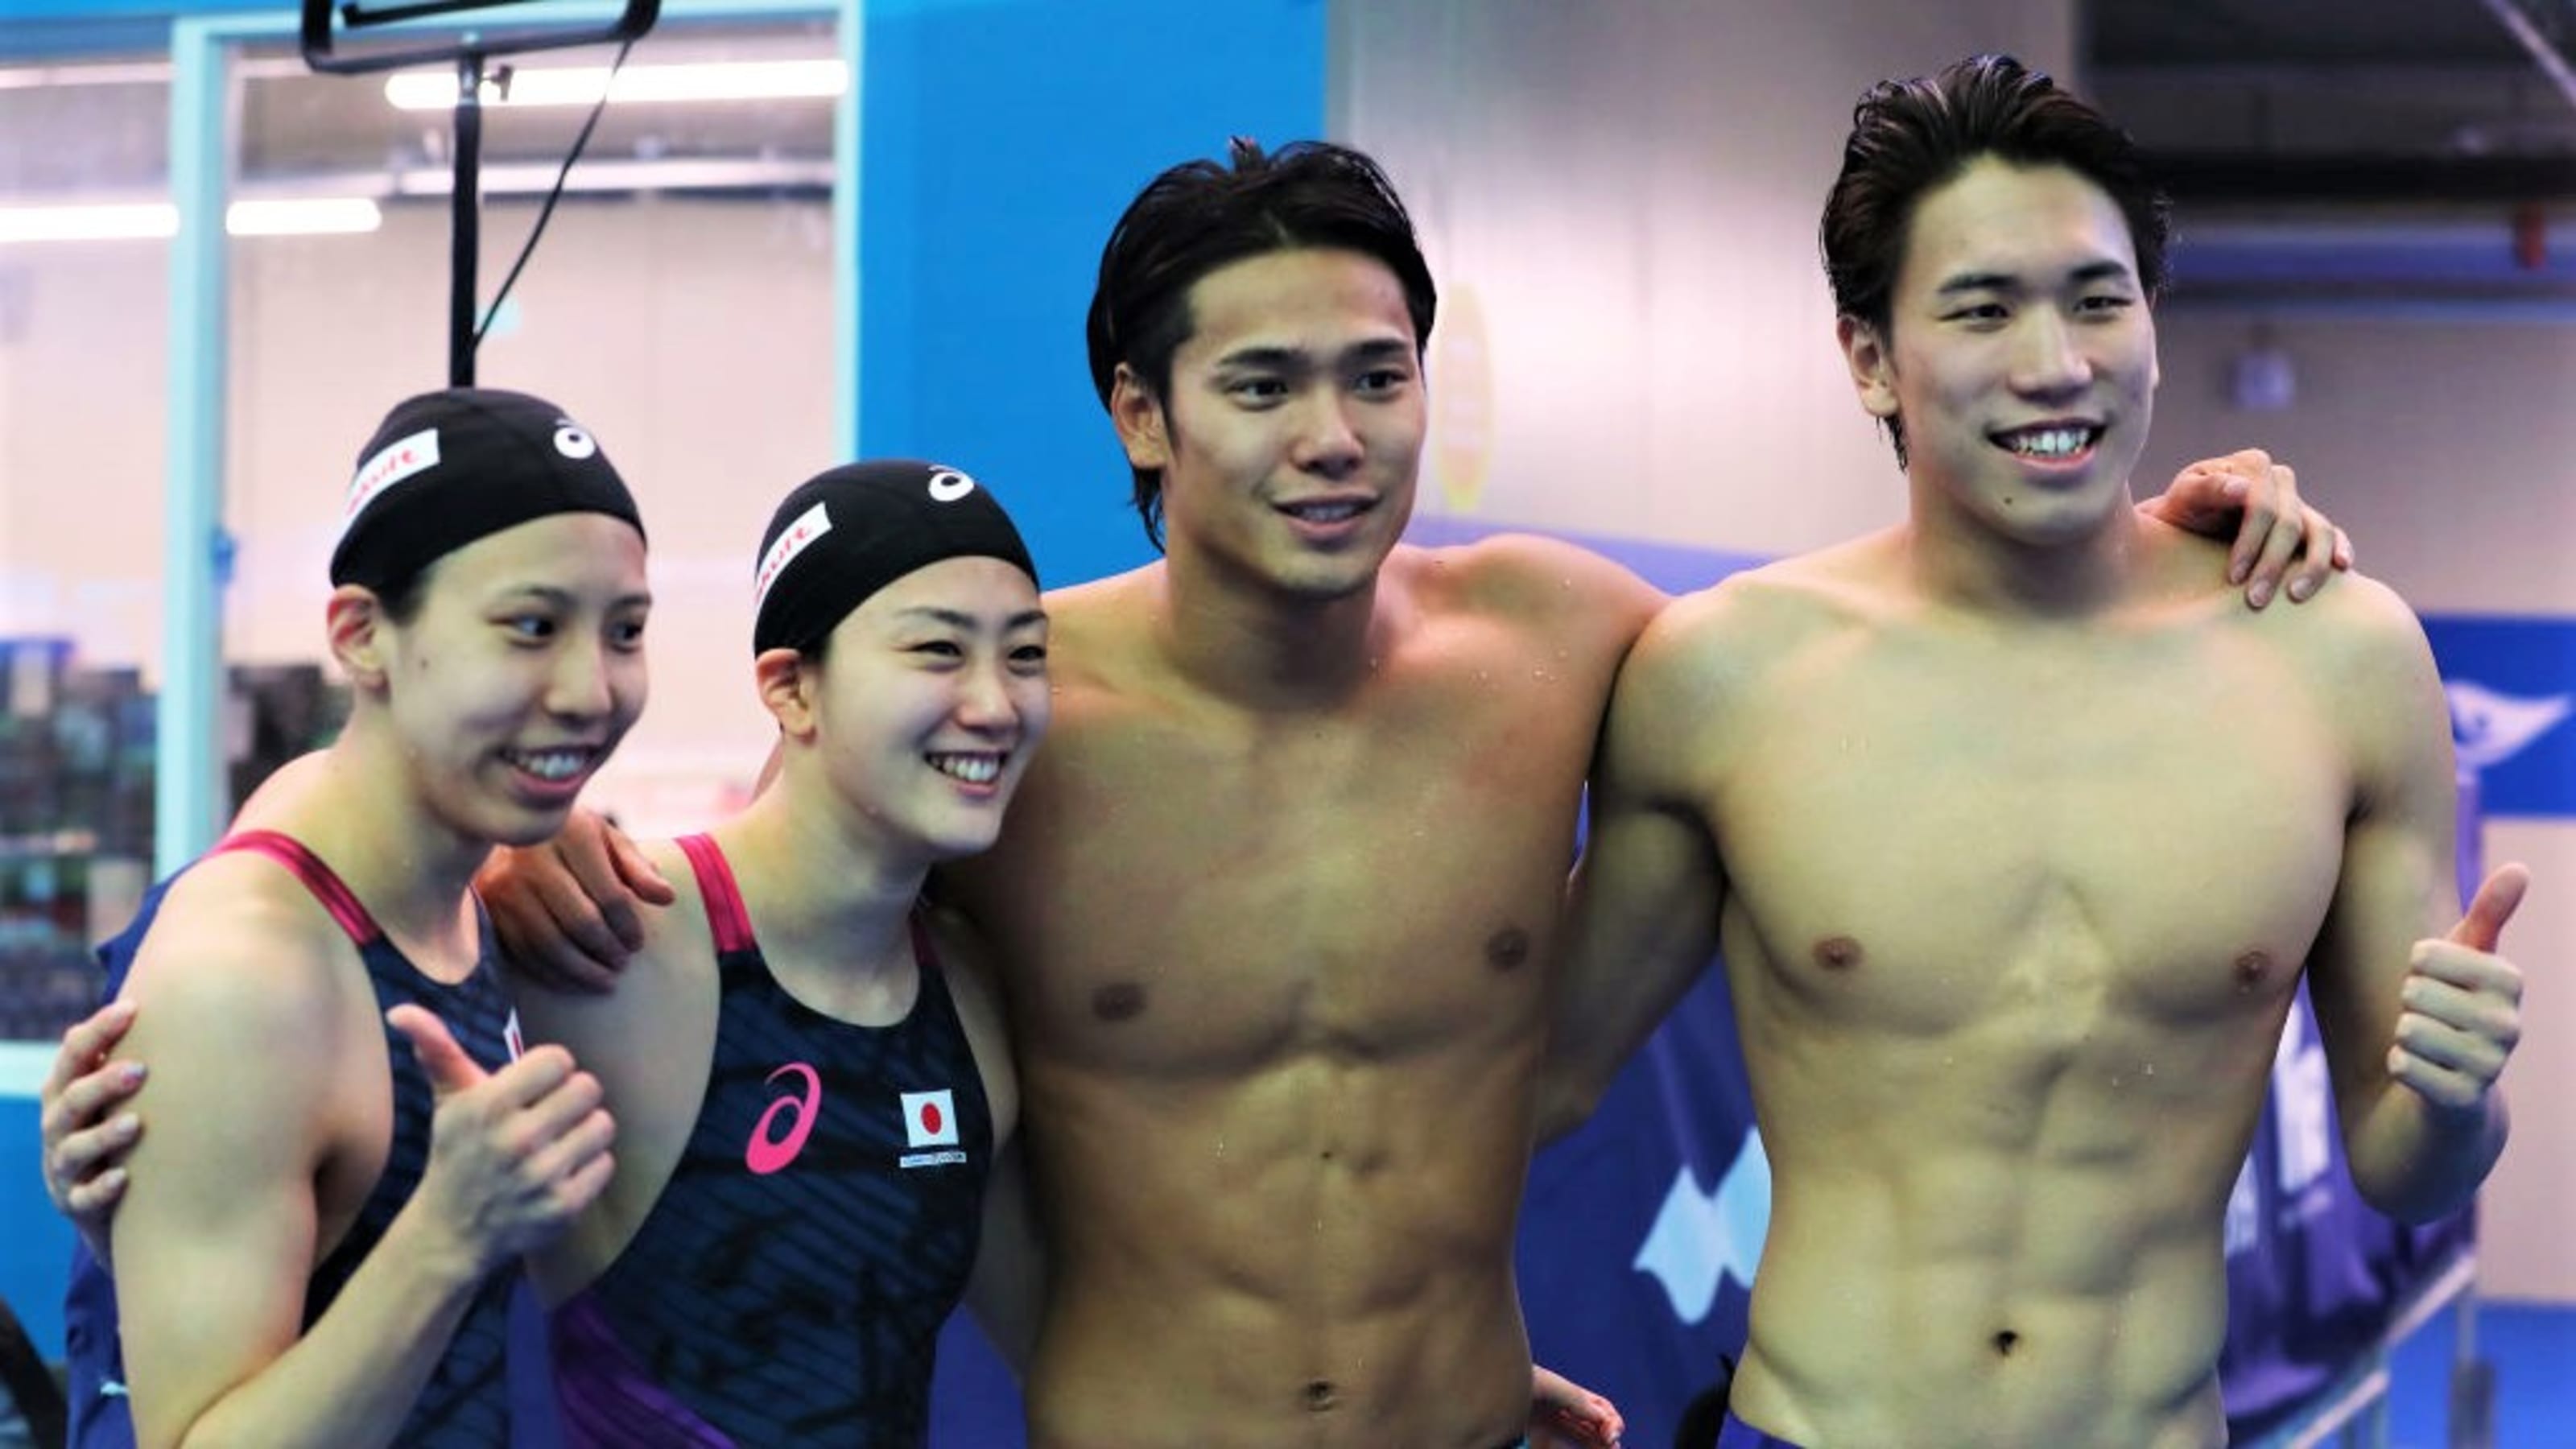 世界水泳 競泳7日目決勝 混合4 100mで日本チームはアジア新記録で7位 男子50m自由形の塩浦は8位